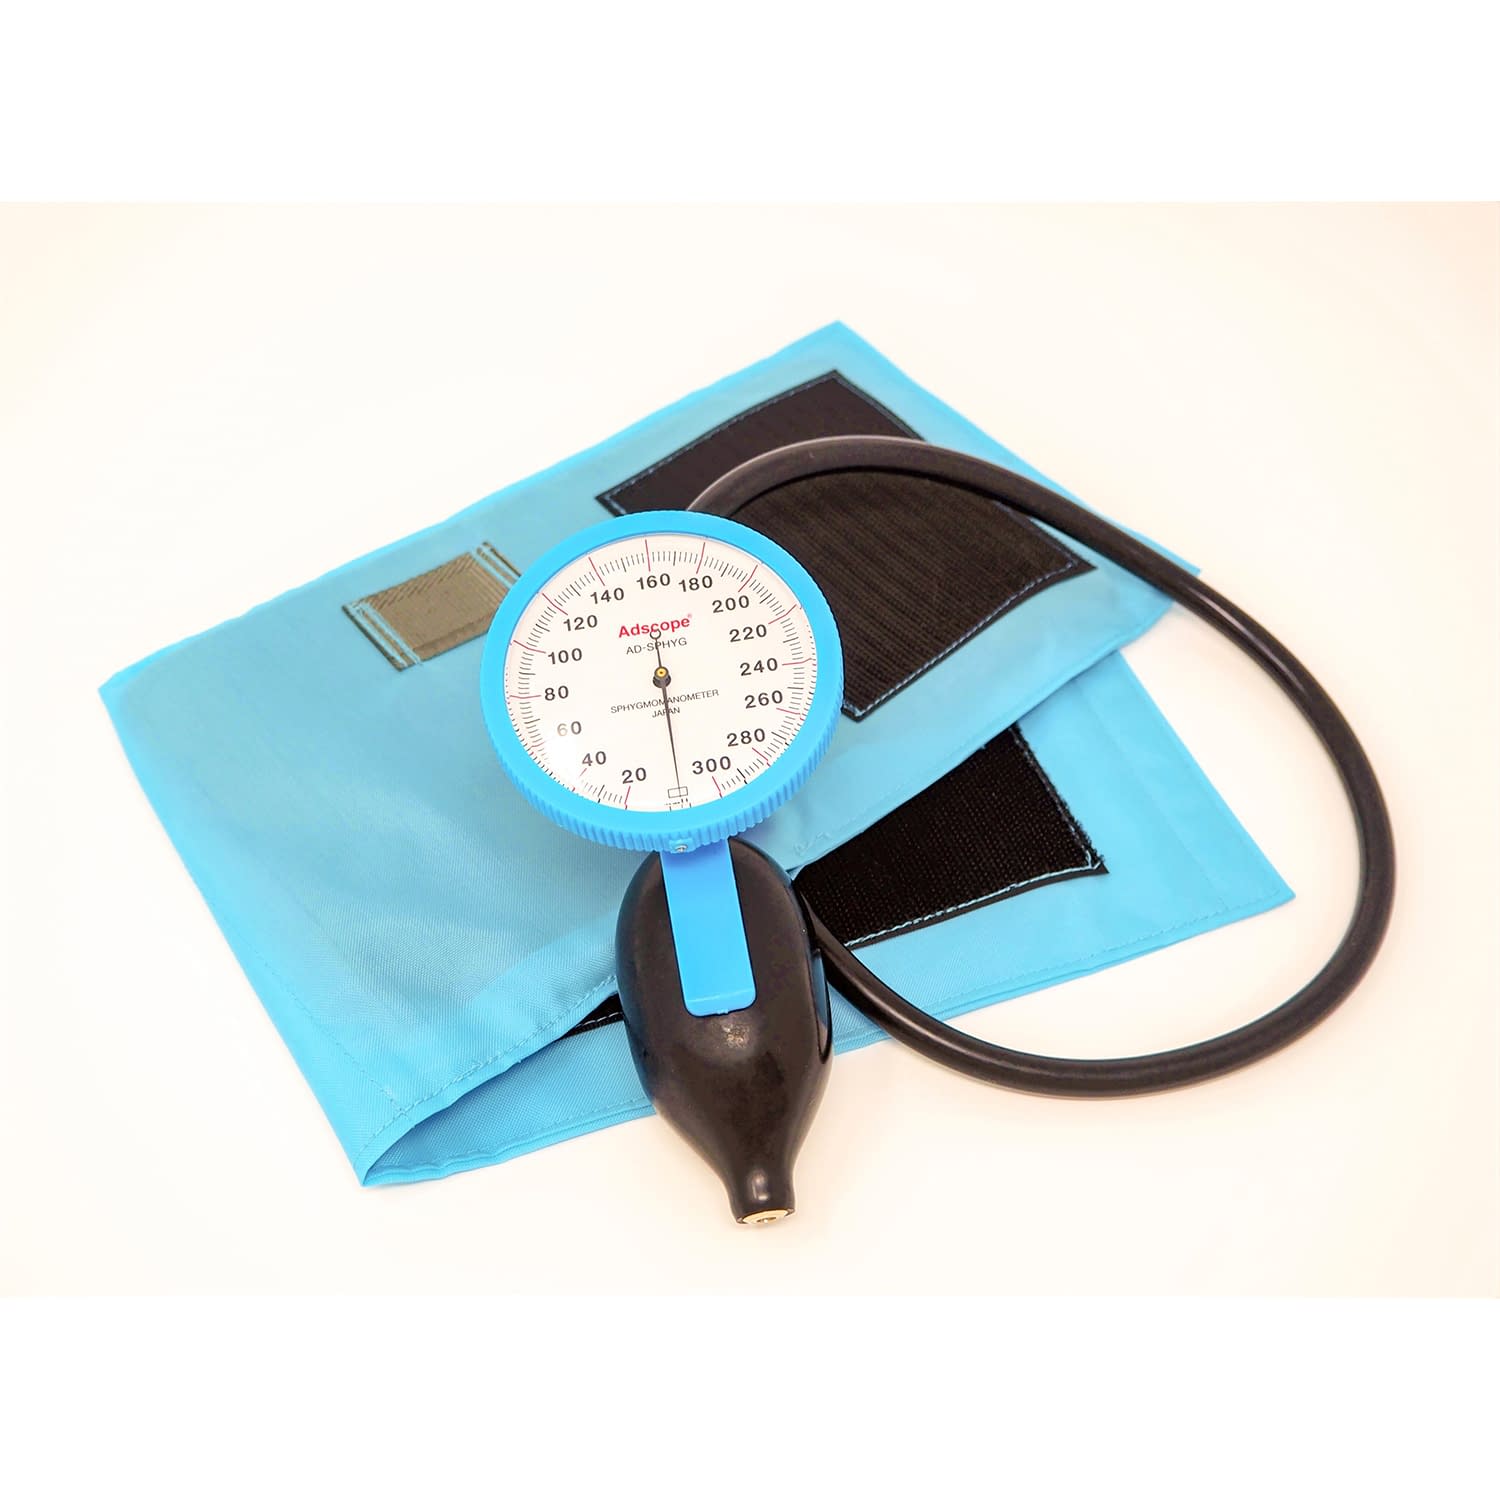 (23-7093-01)ラージゲージアネロイド血圧計 ADC-226B(ﾌﾞﾙｰ)ﾜﾝﾊﾝﾄﾞ ﾗｰｼﾞｹﾞｰｼﾞｱﾈﾛｲﾄﾞｹﾂｱﾂｹ【1台単位】【2019年カタログ商品】